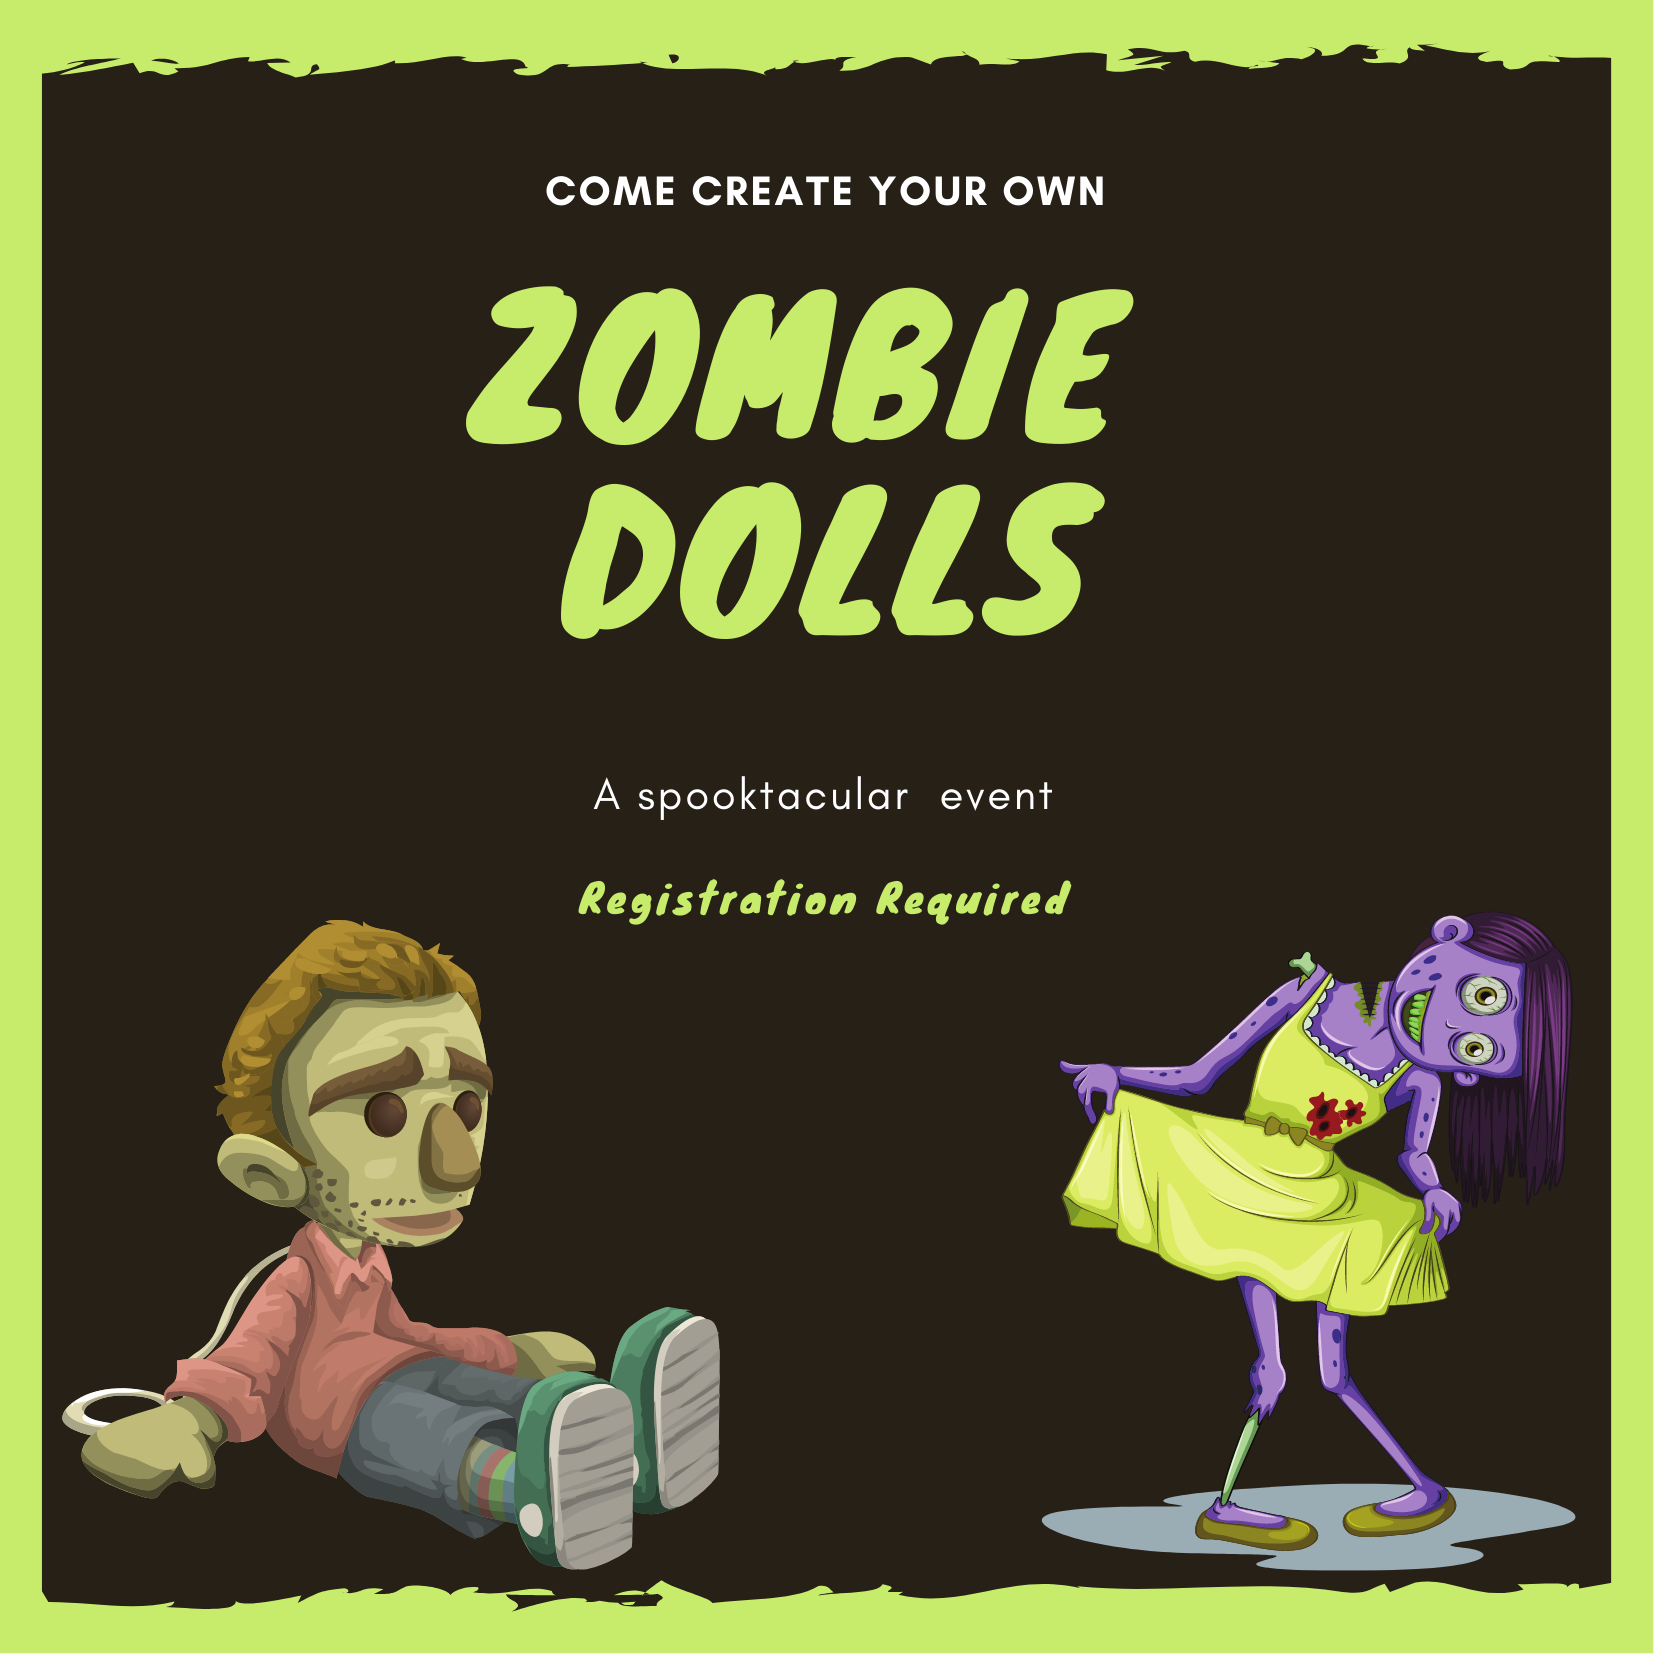 Create your own zombie dolls / girl zombie boy zombie